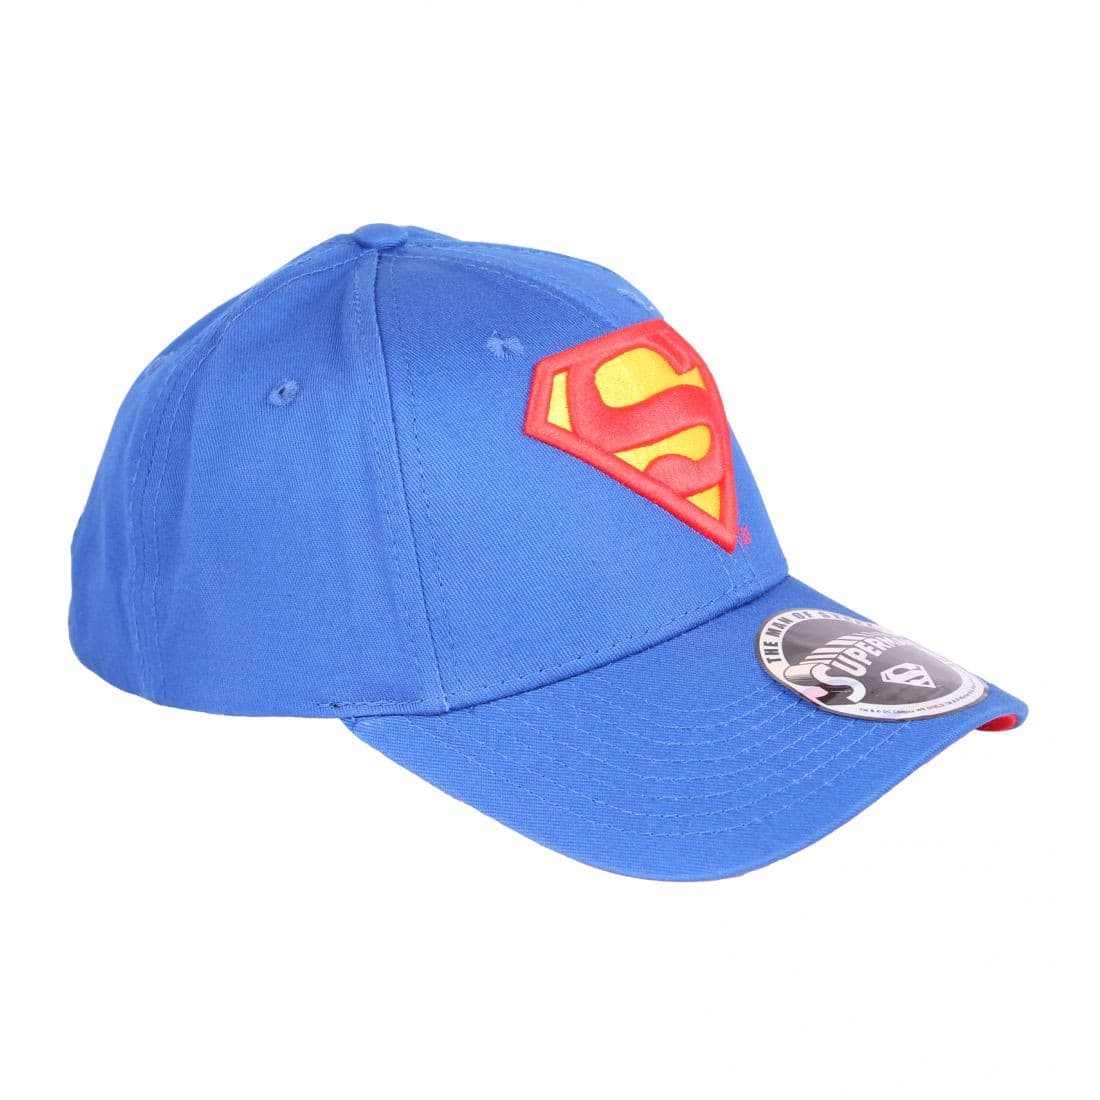 Super Homem - Chapéu Pala Curva Popstore 